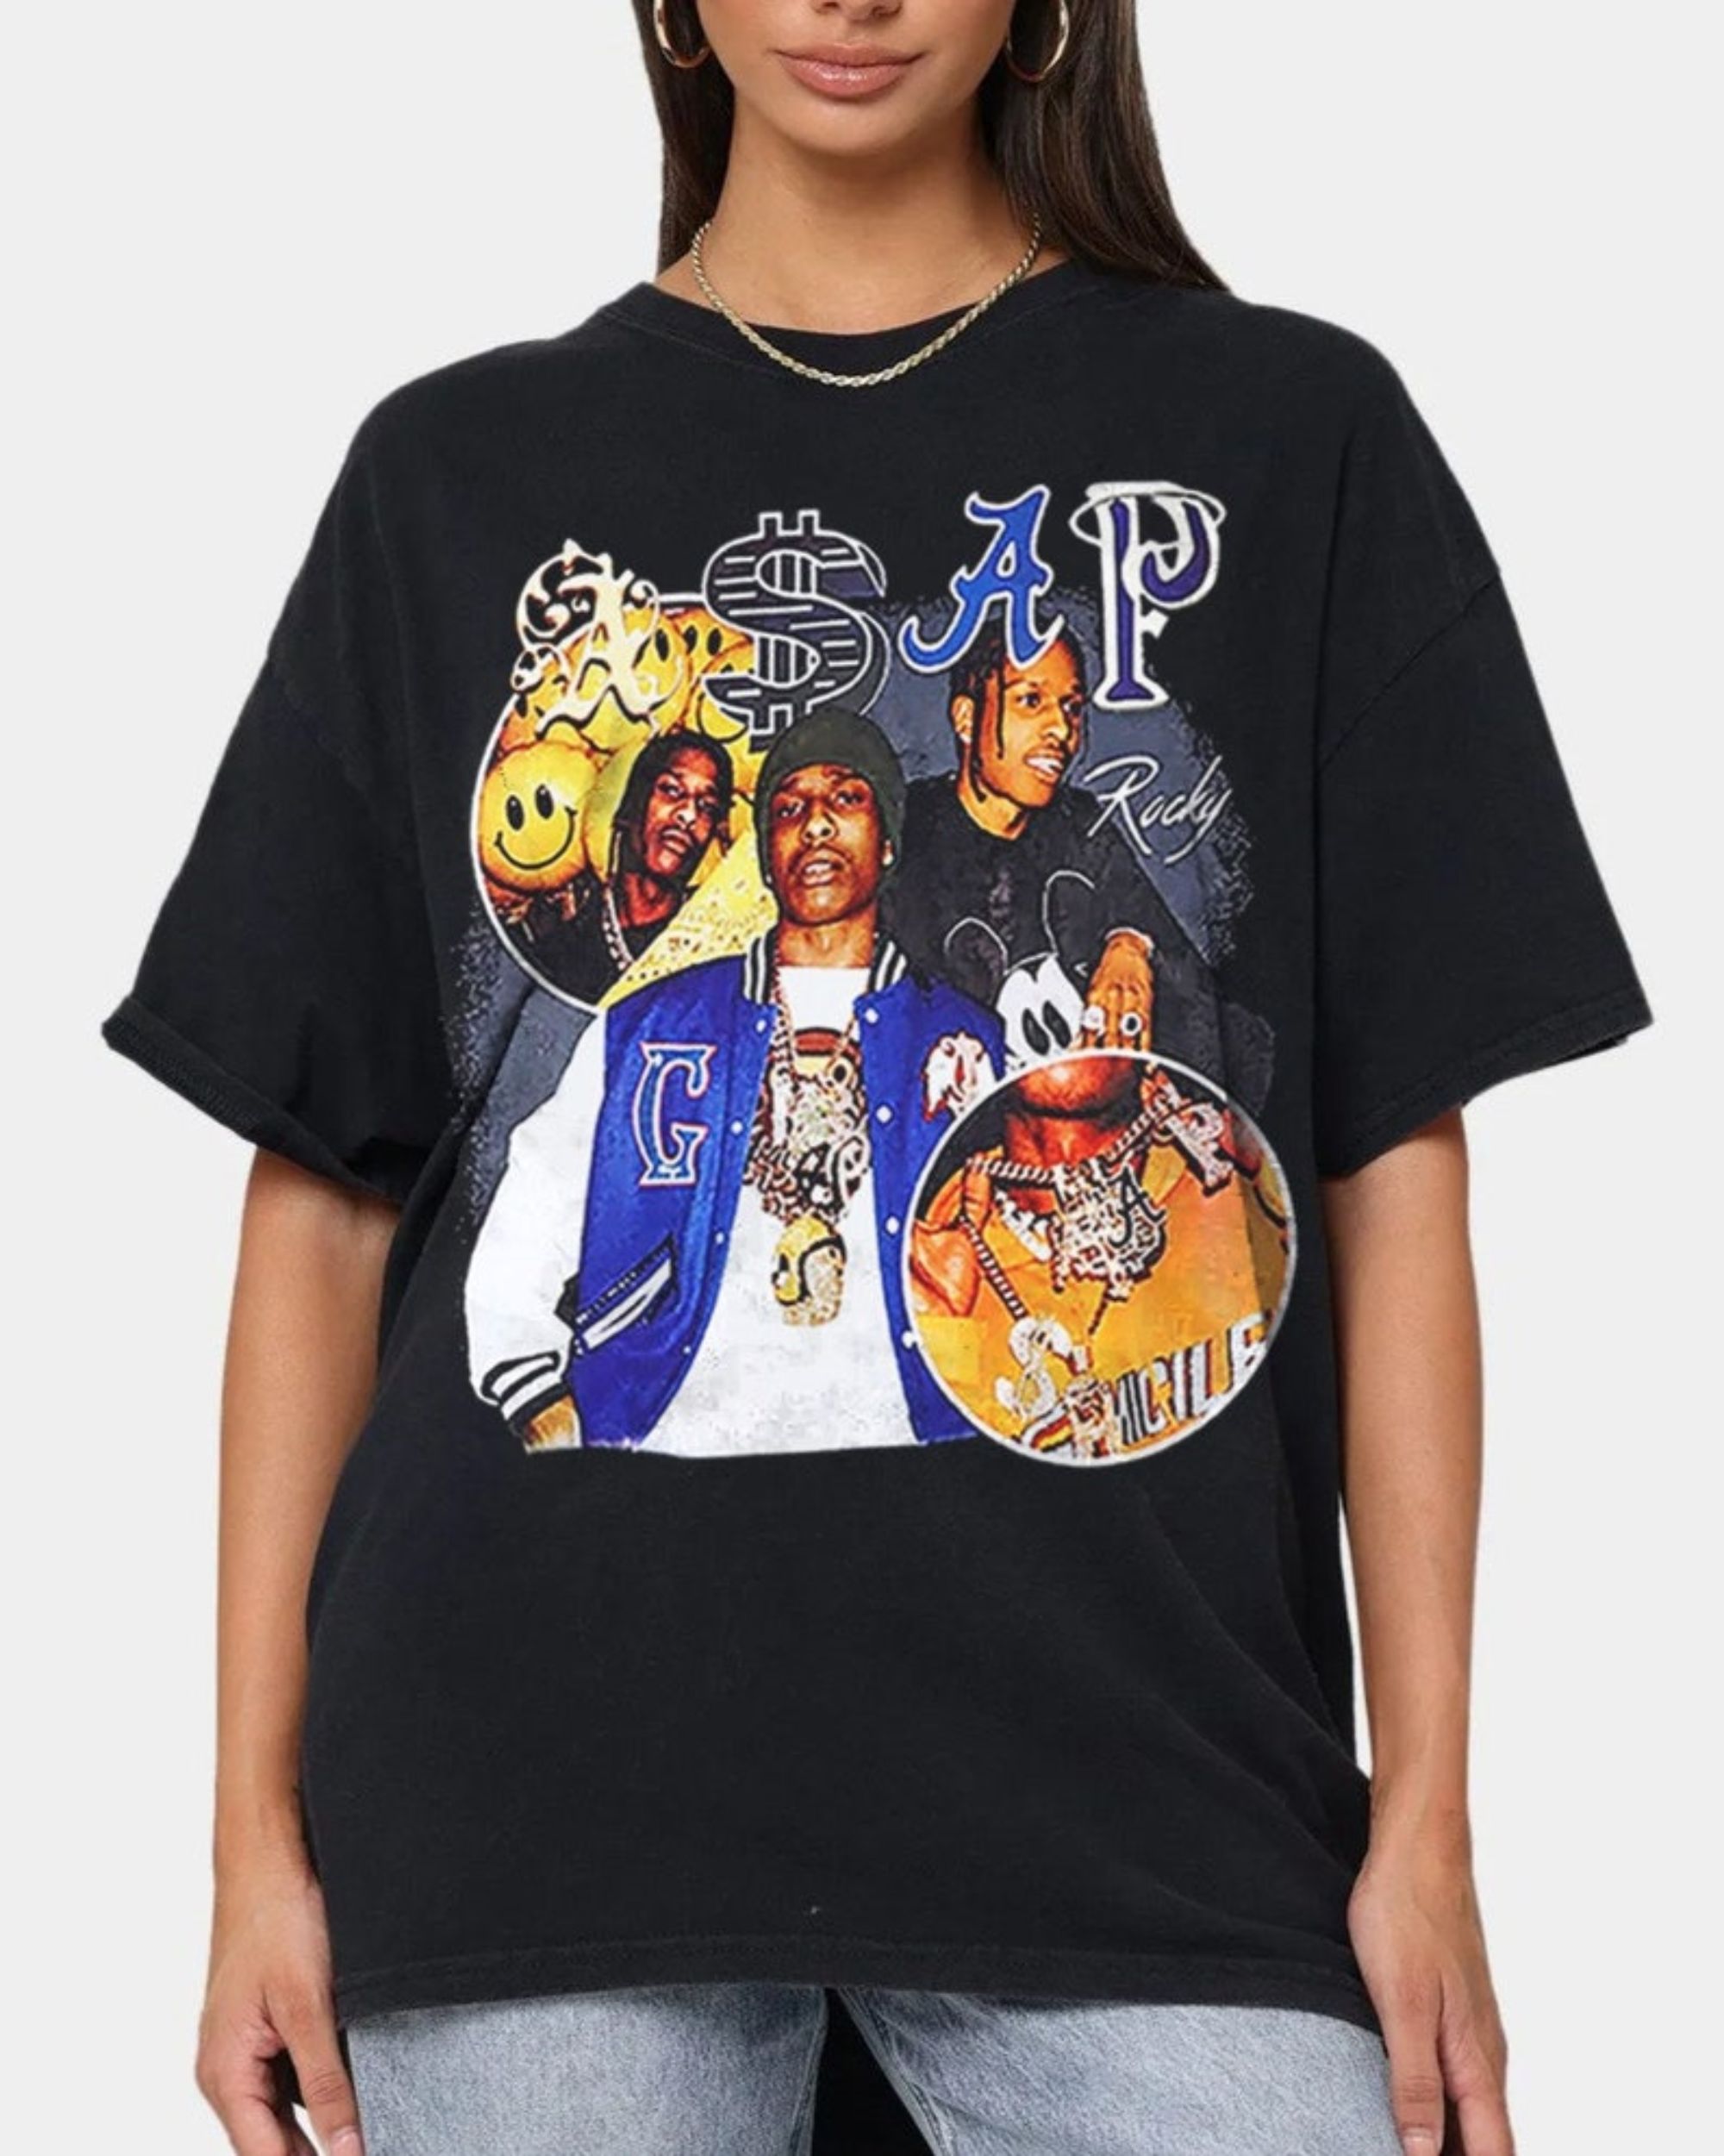 asap rocky rap t shirt 90s retro vintage rap tee hip hop unisex shirt